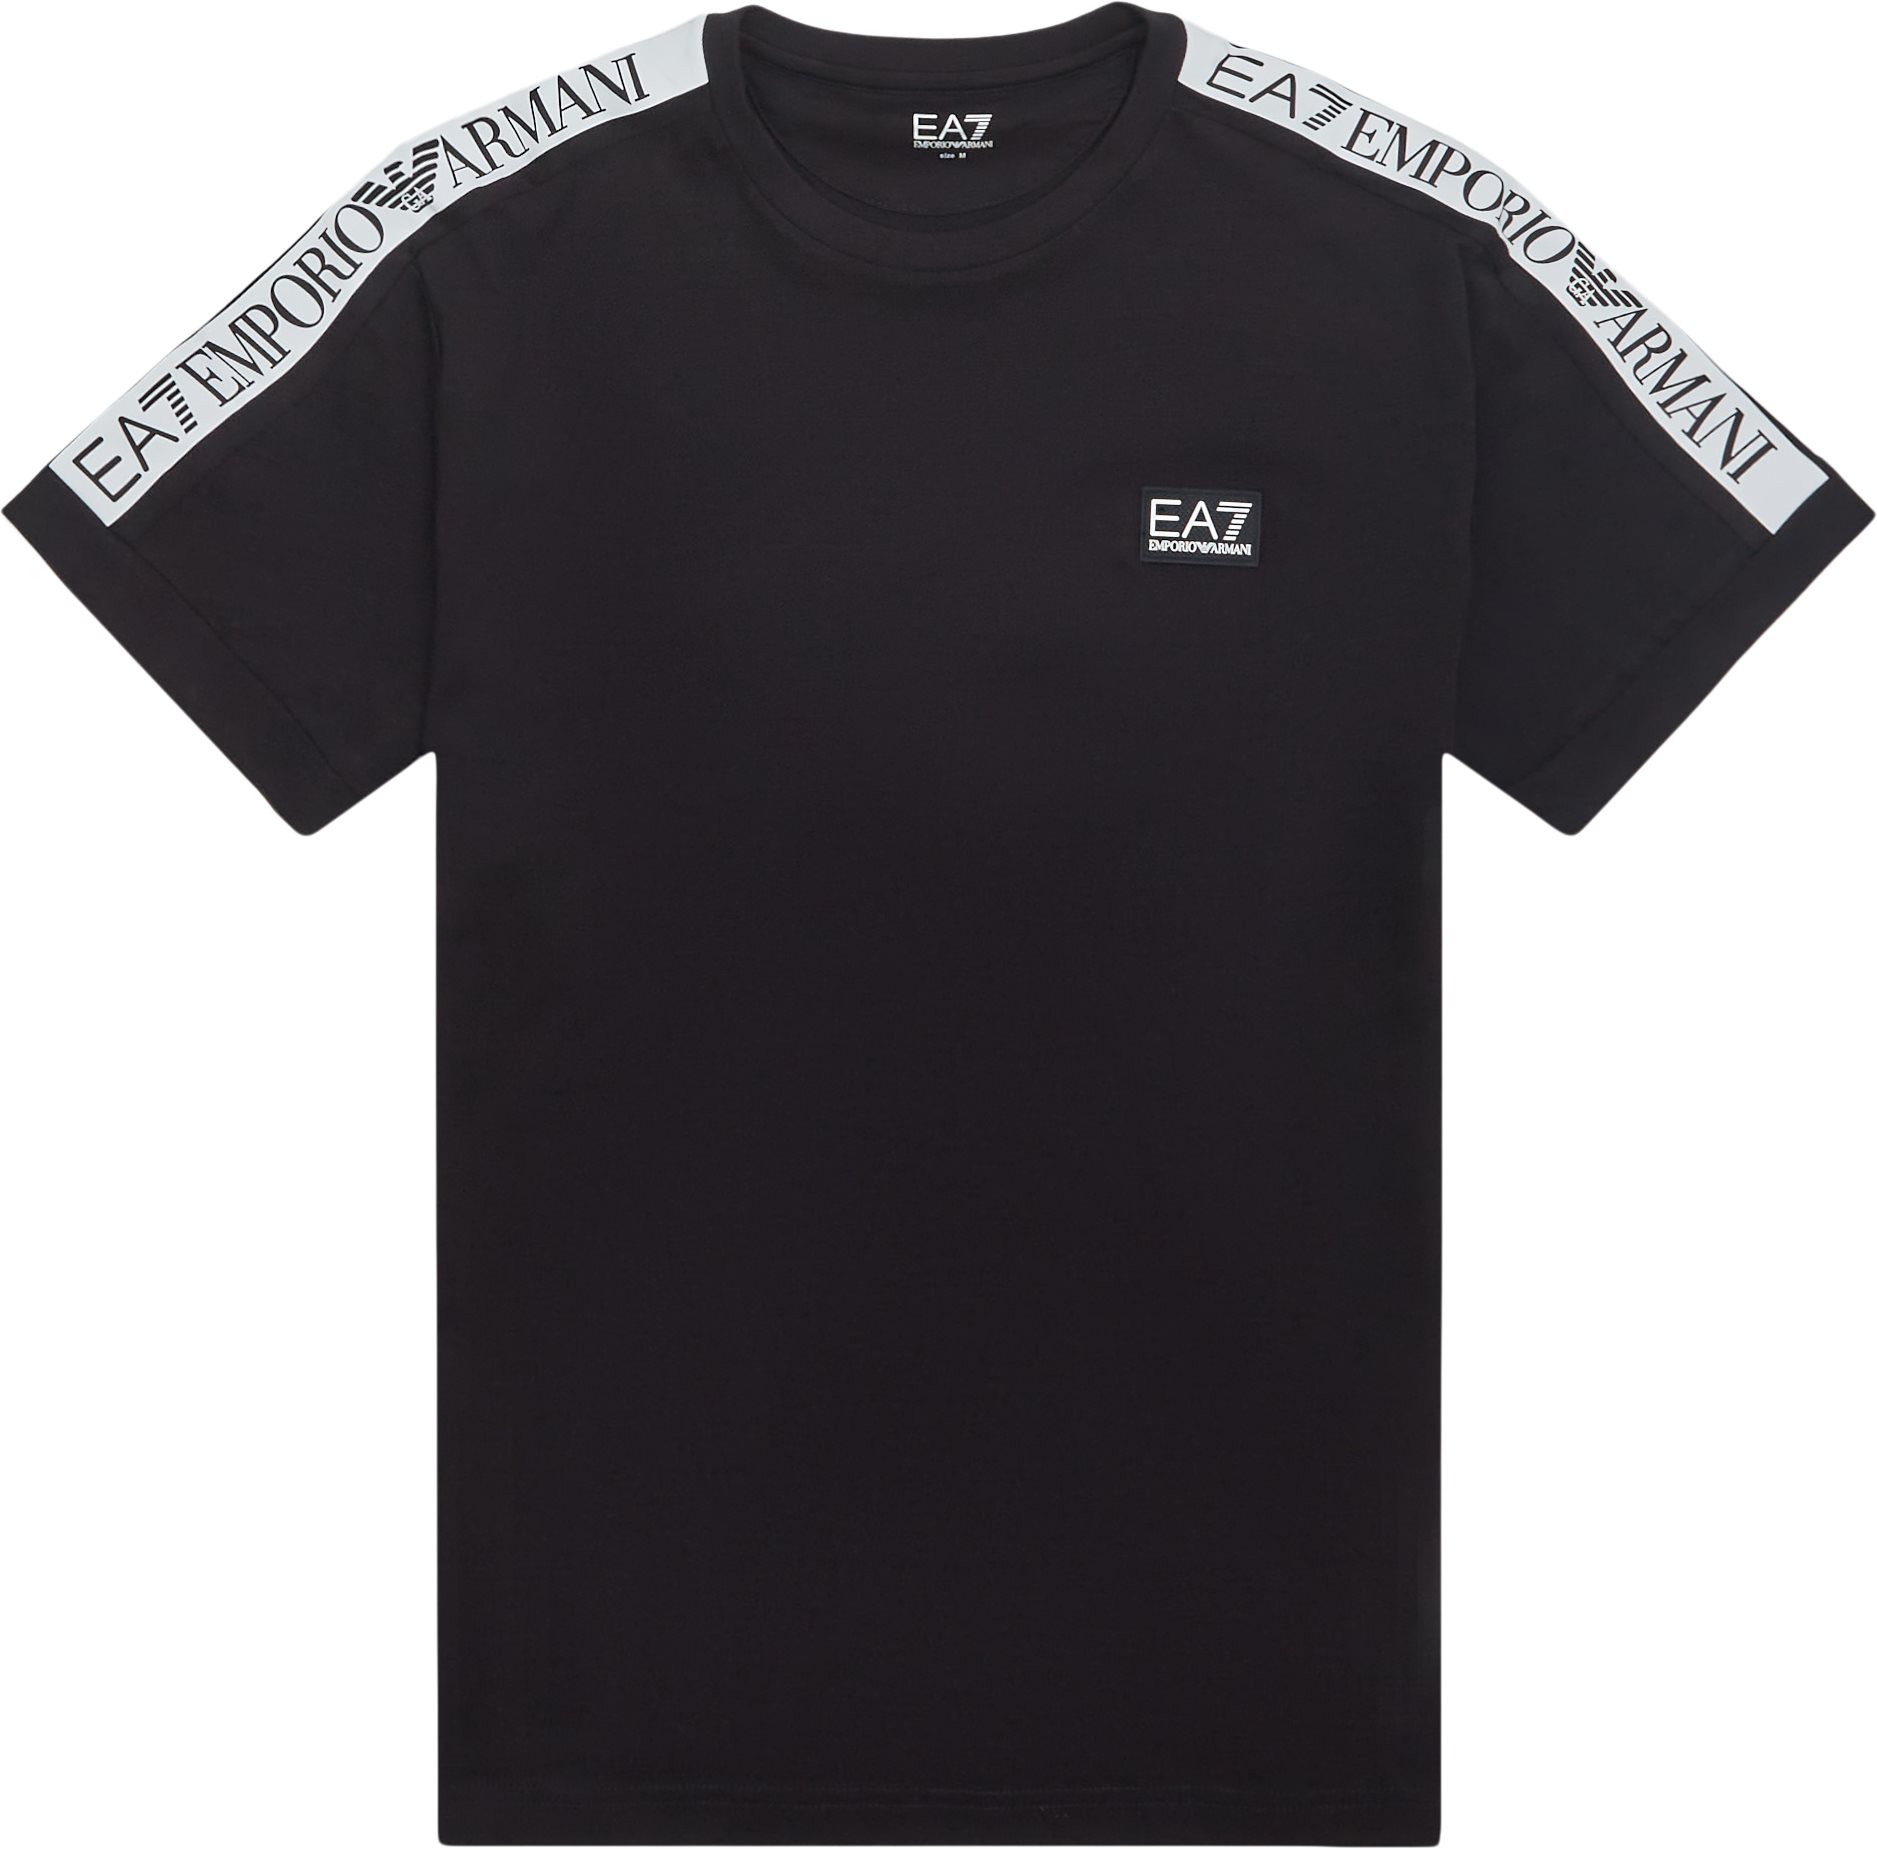 EA7 T-shirts PJ02Z-6LPT50 Sort